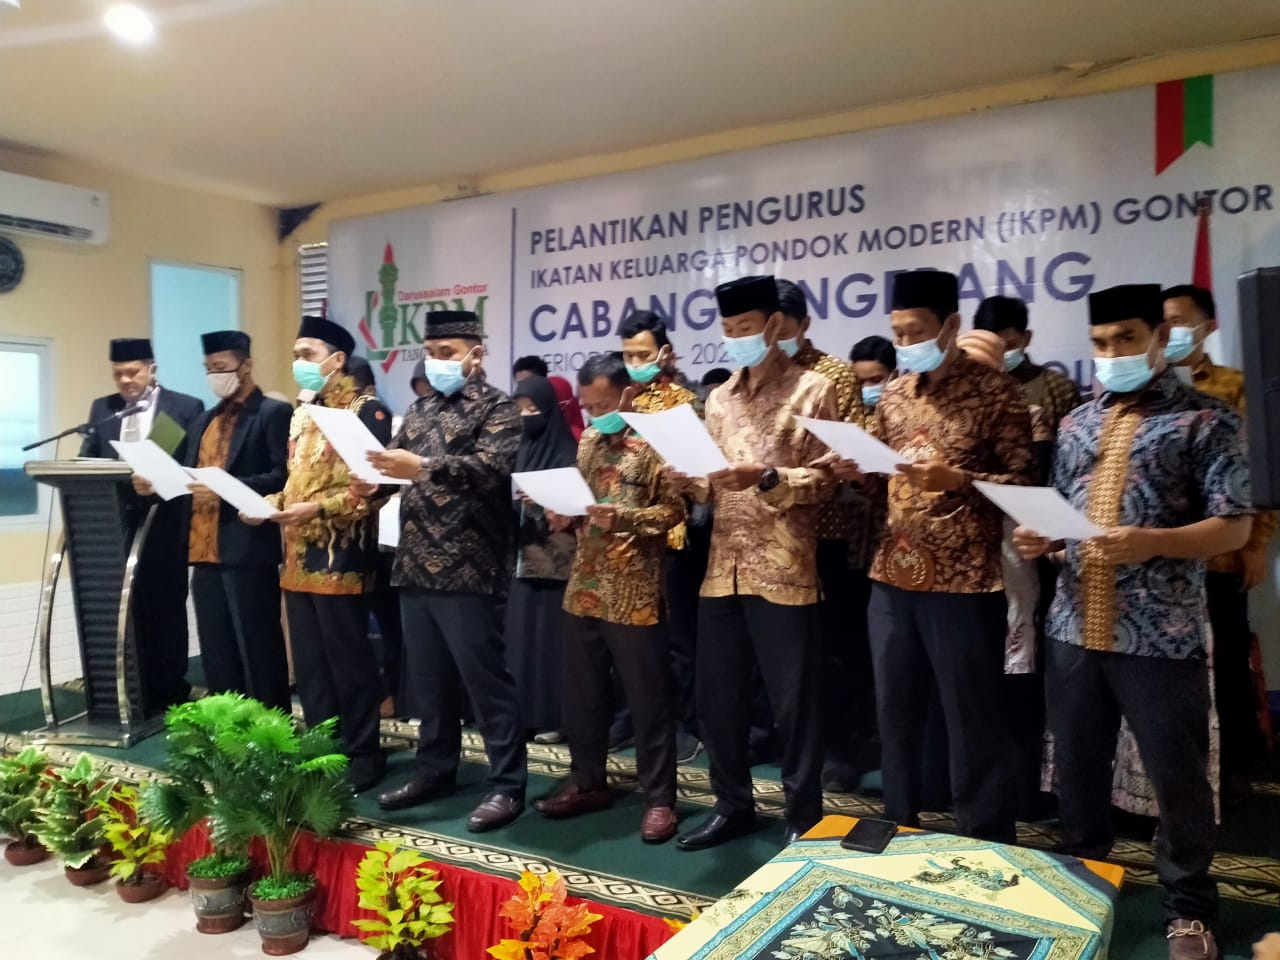 Lantik IKPM Tangerang, Ustadz Ismail: Semakin Banyak Alumni, Semakin Besar Tanggung jawab